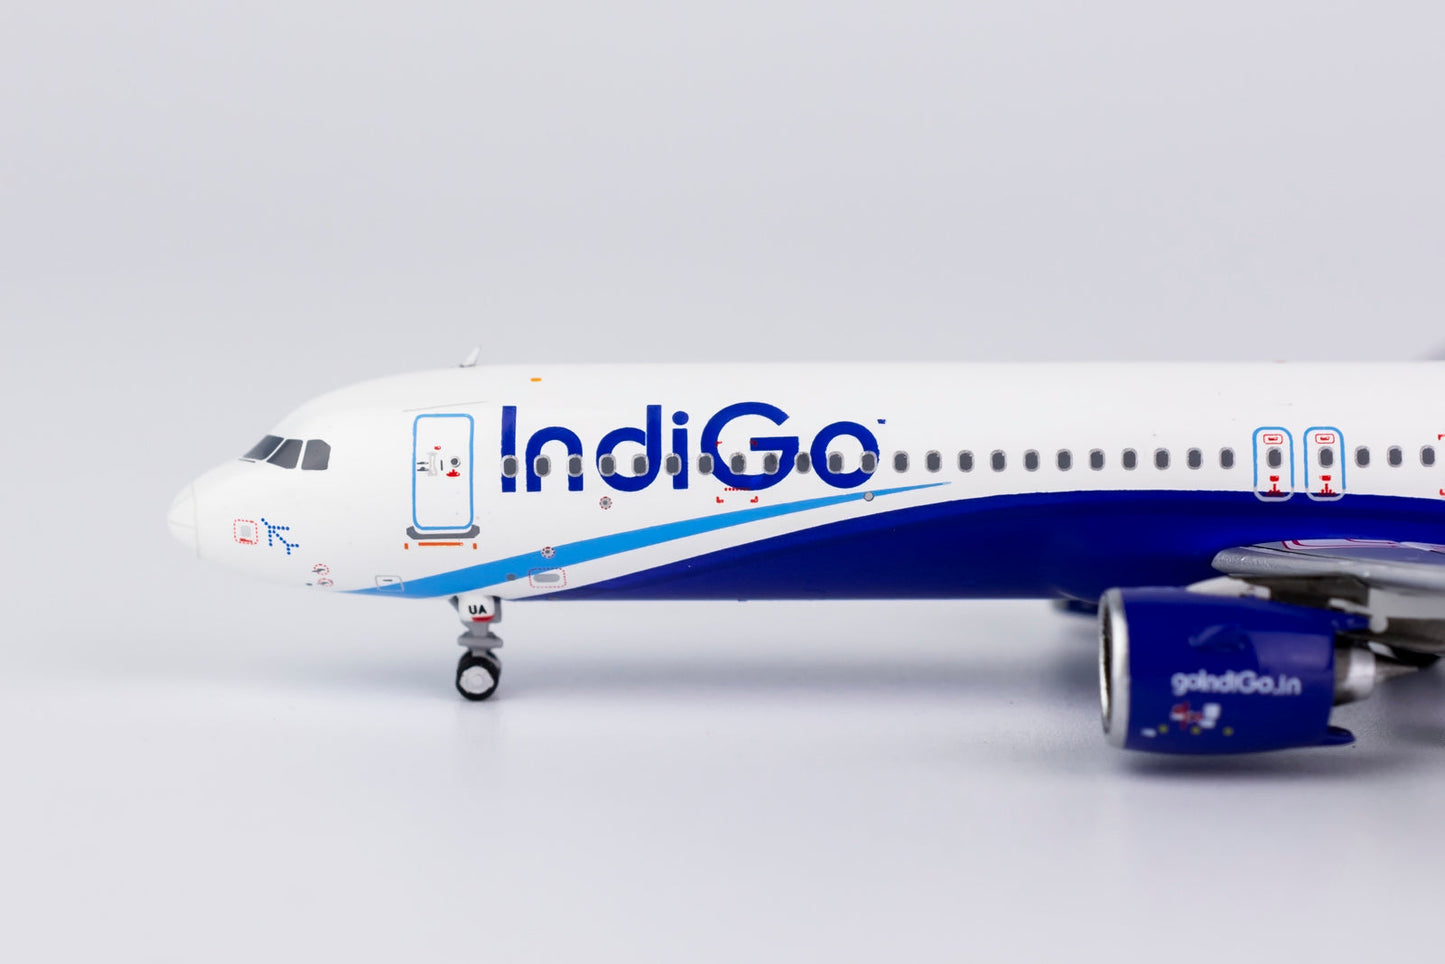 *1/400 IndiGo A321neo NG Models 13030